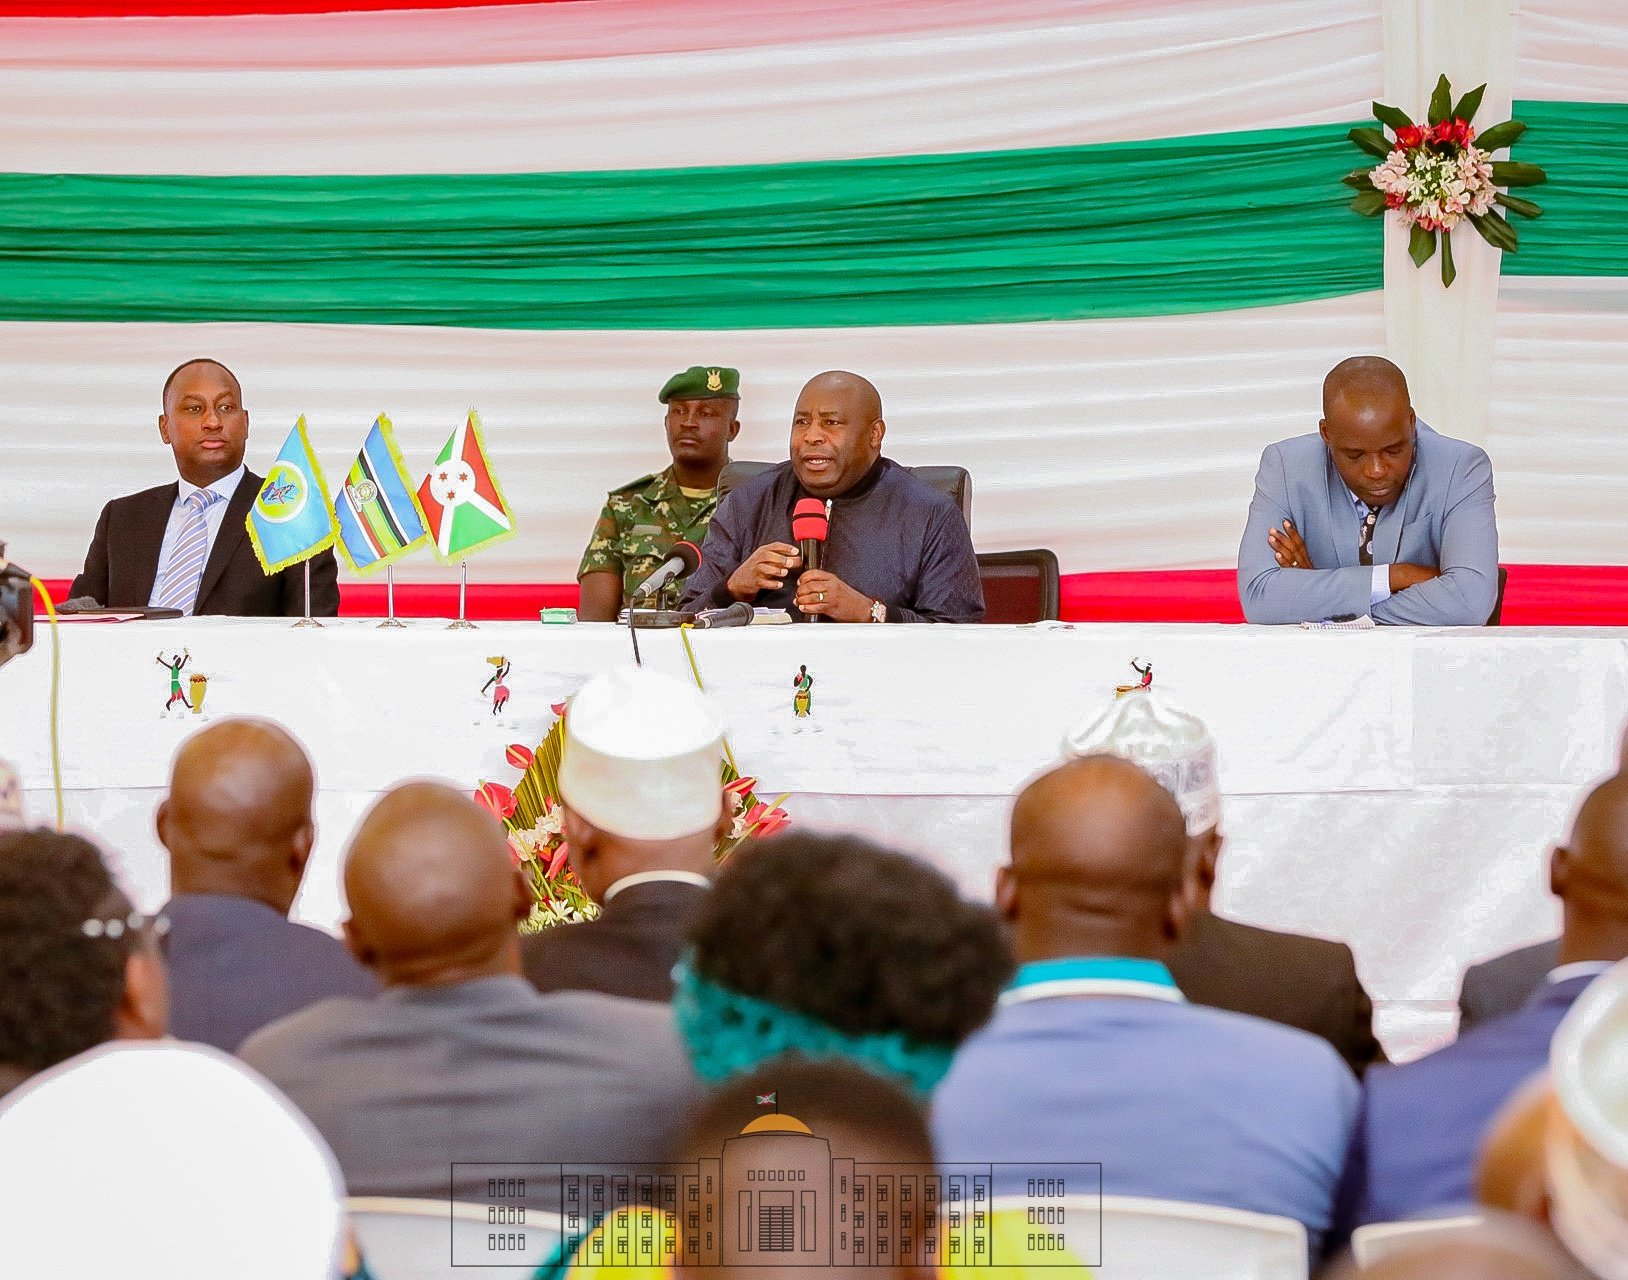 Le Président Ndayishimiye et les hommes d’affaires ont une vision commune pour le Burundi